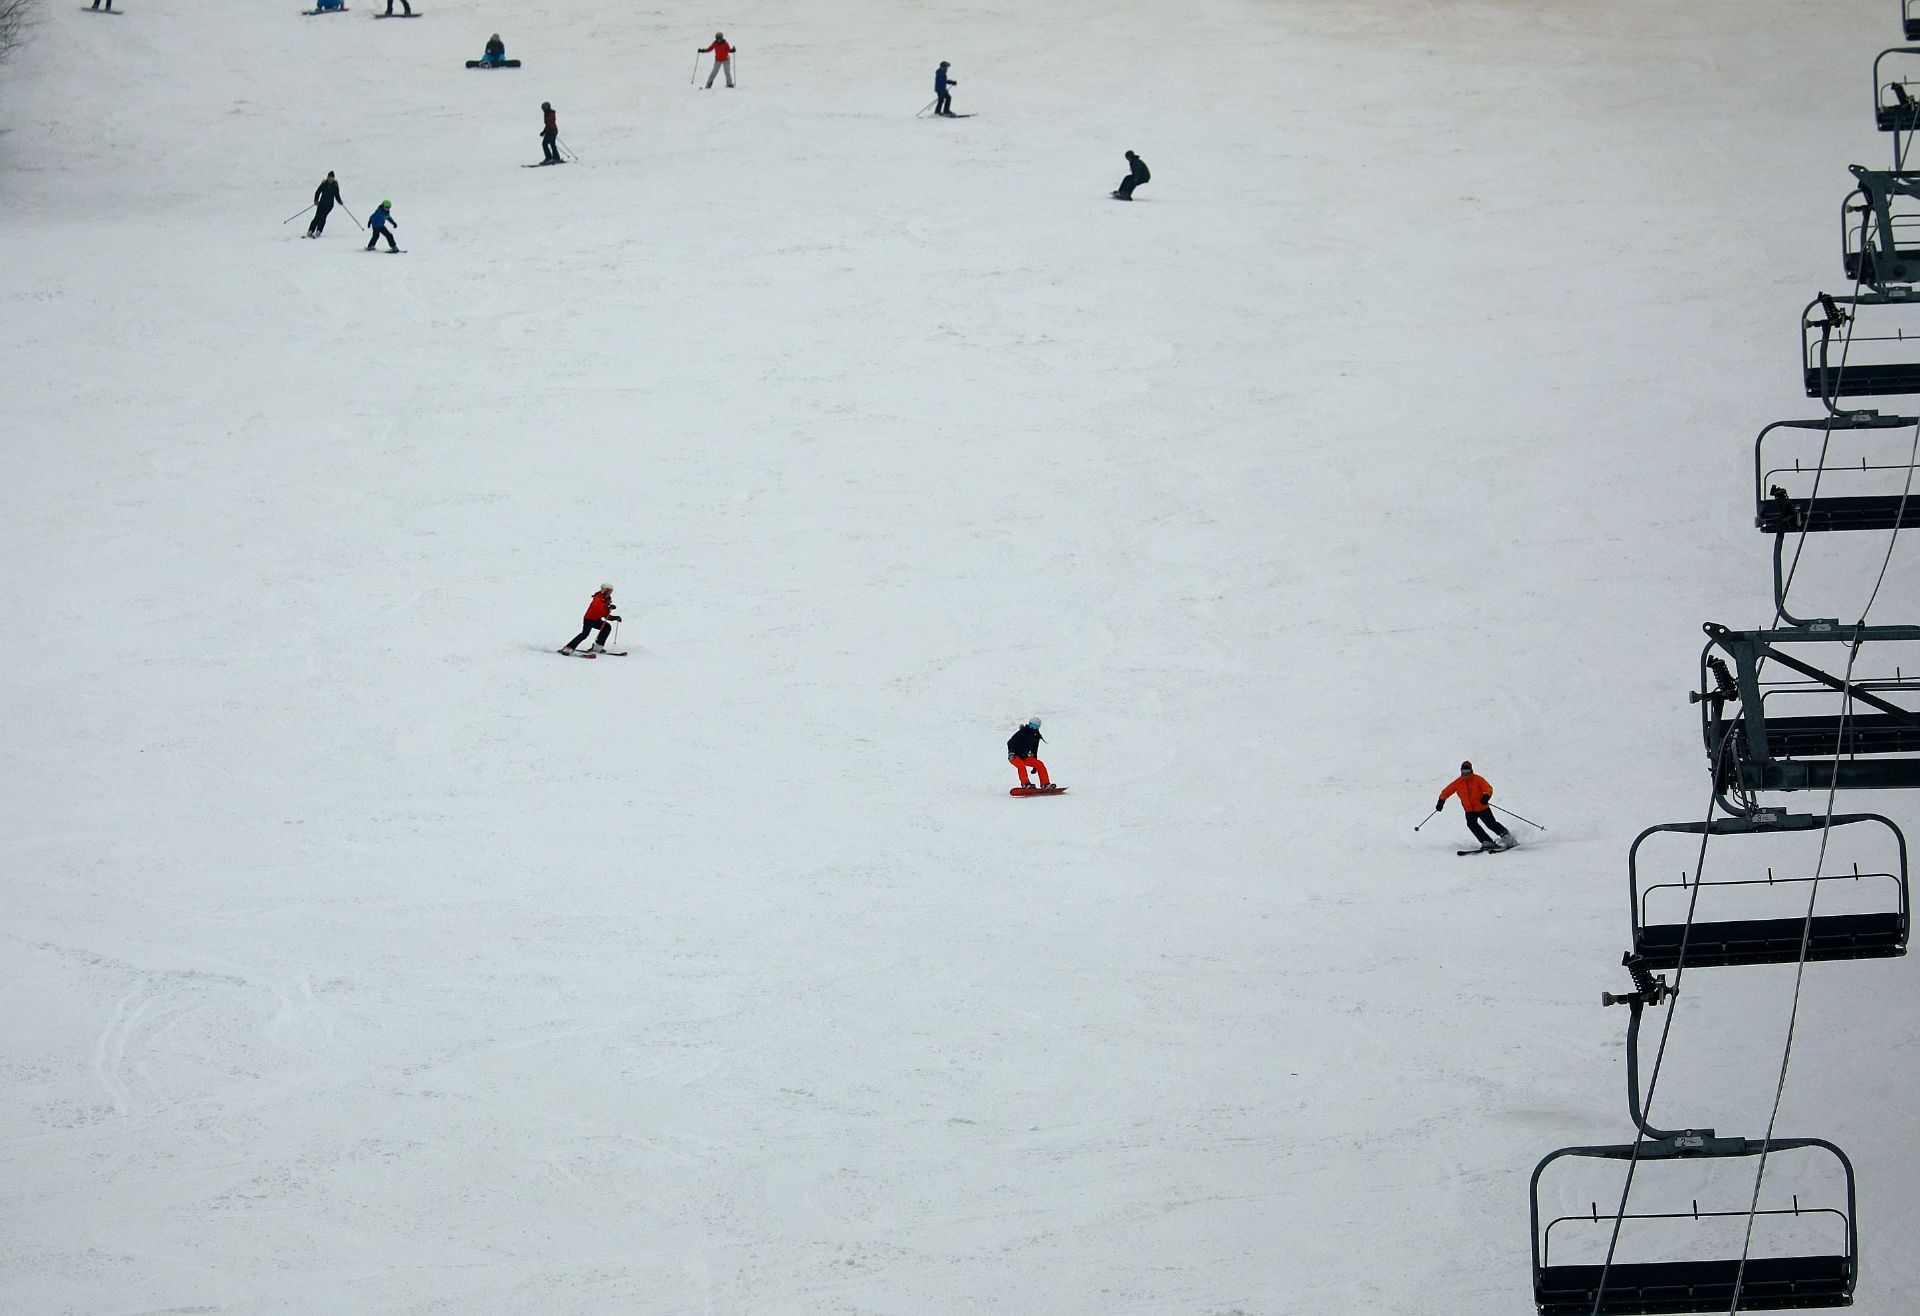 蓝山滑雪场是多伦多北冬天不可多得的度假首选。